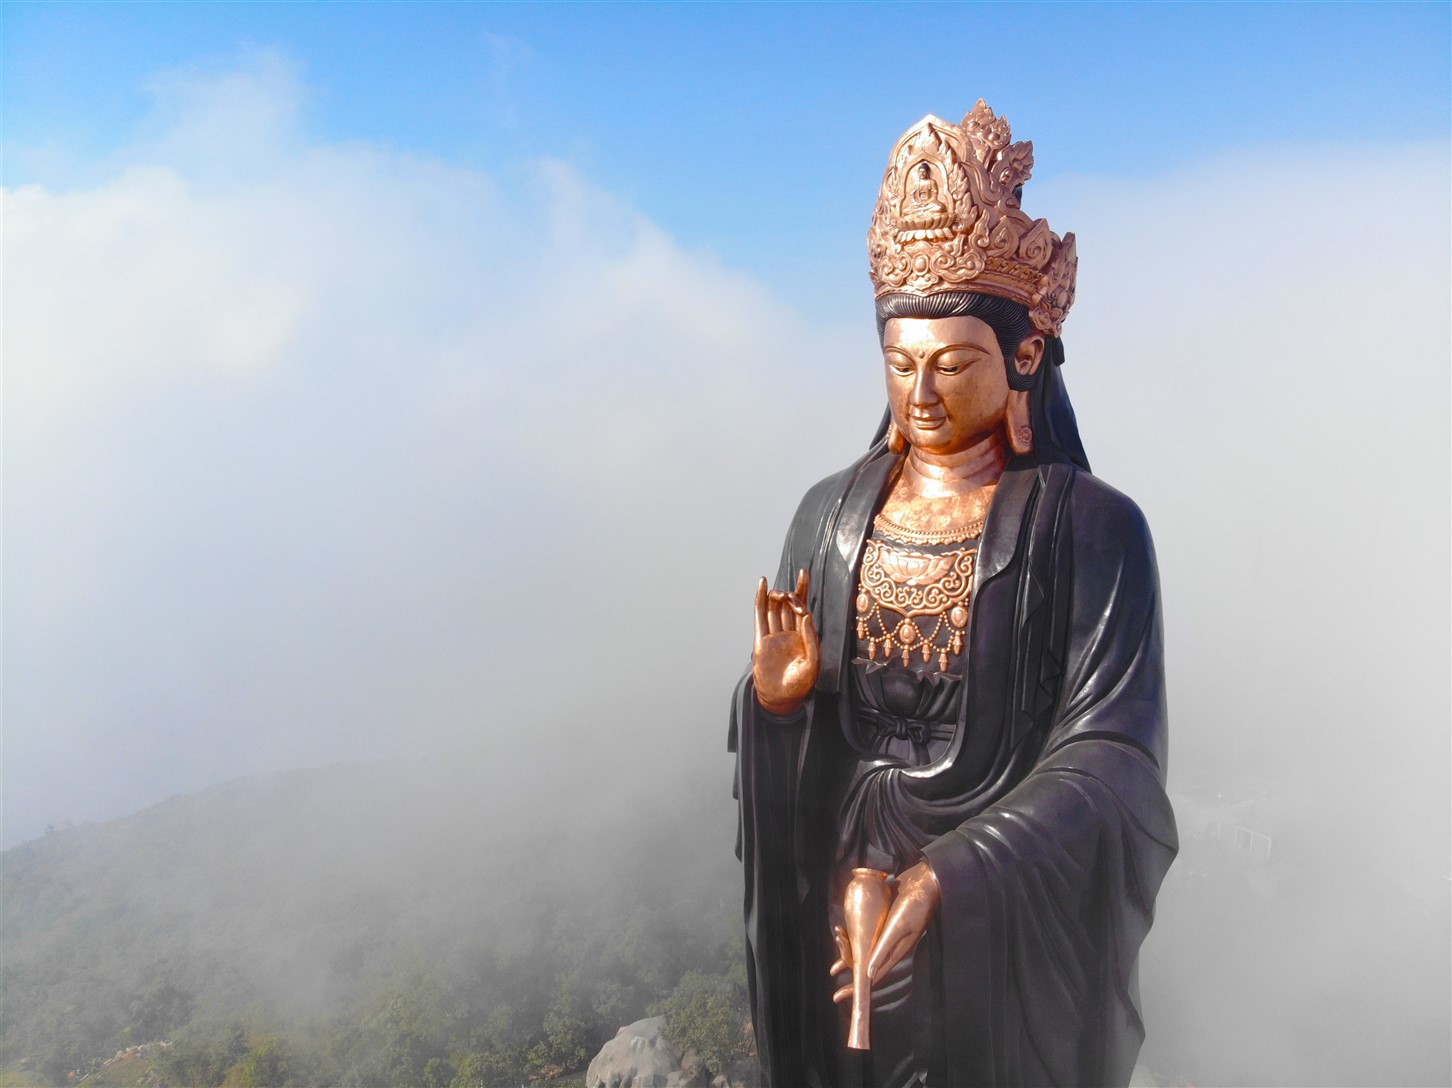 Tượng Phật Bà đồng cao nhất Châu Á: Nếu bạn yêu mến văn hóa Phật giáo, hãy tới đây để cảm nhận vẻ đẹp tuyệt vời của tượng Phật Bà đồng cao nhất Châu Á. Tác phẩm kiến trúc này đã trở thành tâm điểm du lịch thu hút nhiều du khách tới tham quan và tìm hiểu về văn hóa Phật giáo.